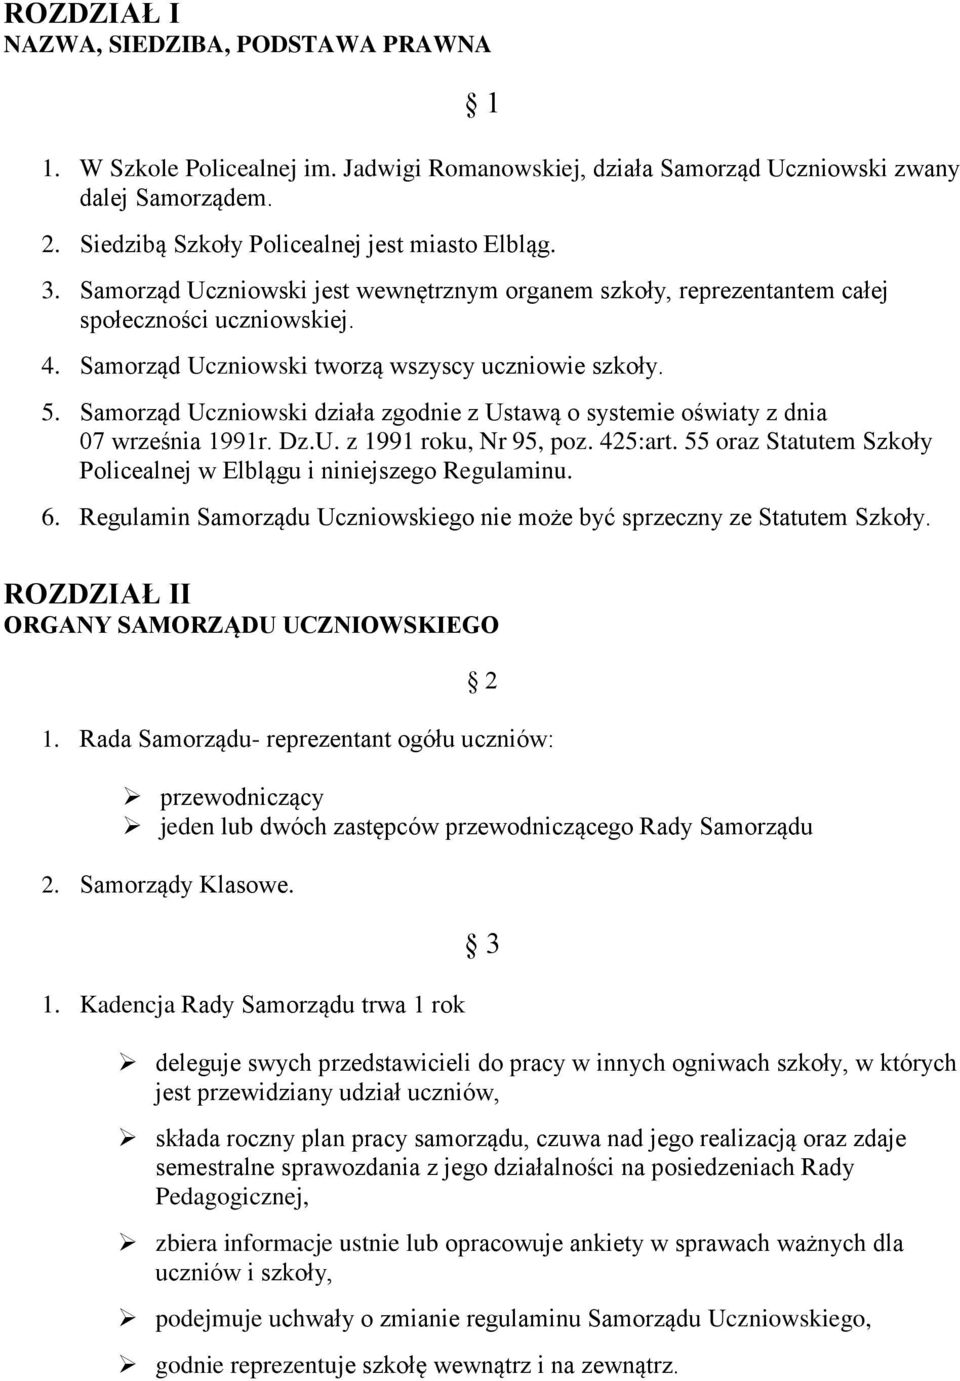 Samorząd Uczniowski działa zgodnie z Ustawą o systemie oświaty z dnia 07 września 1991r. Dz.U. z 1991 roku, Nr 95, poz. 425:art. 55 oraz Statutem Szkoły Policealnej w Elblągu i niniejszego Regulaminu.